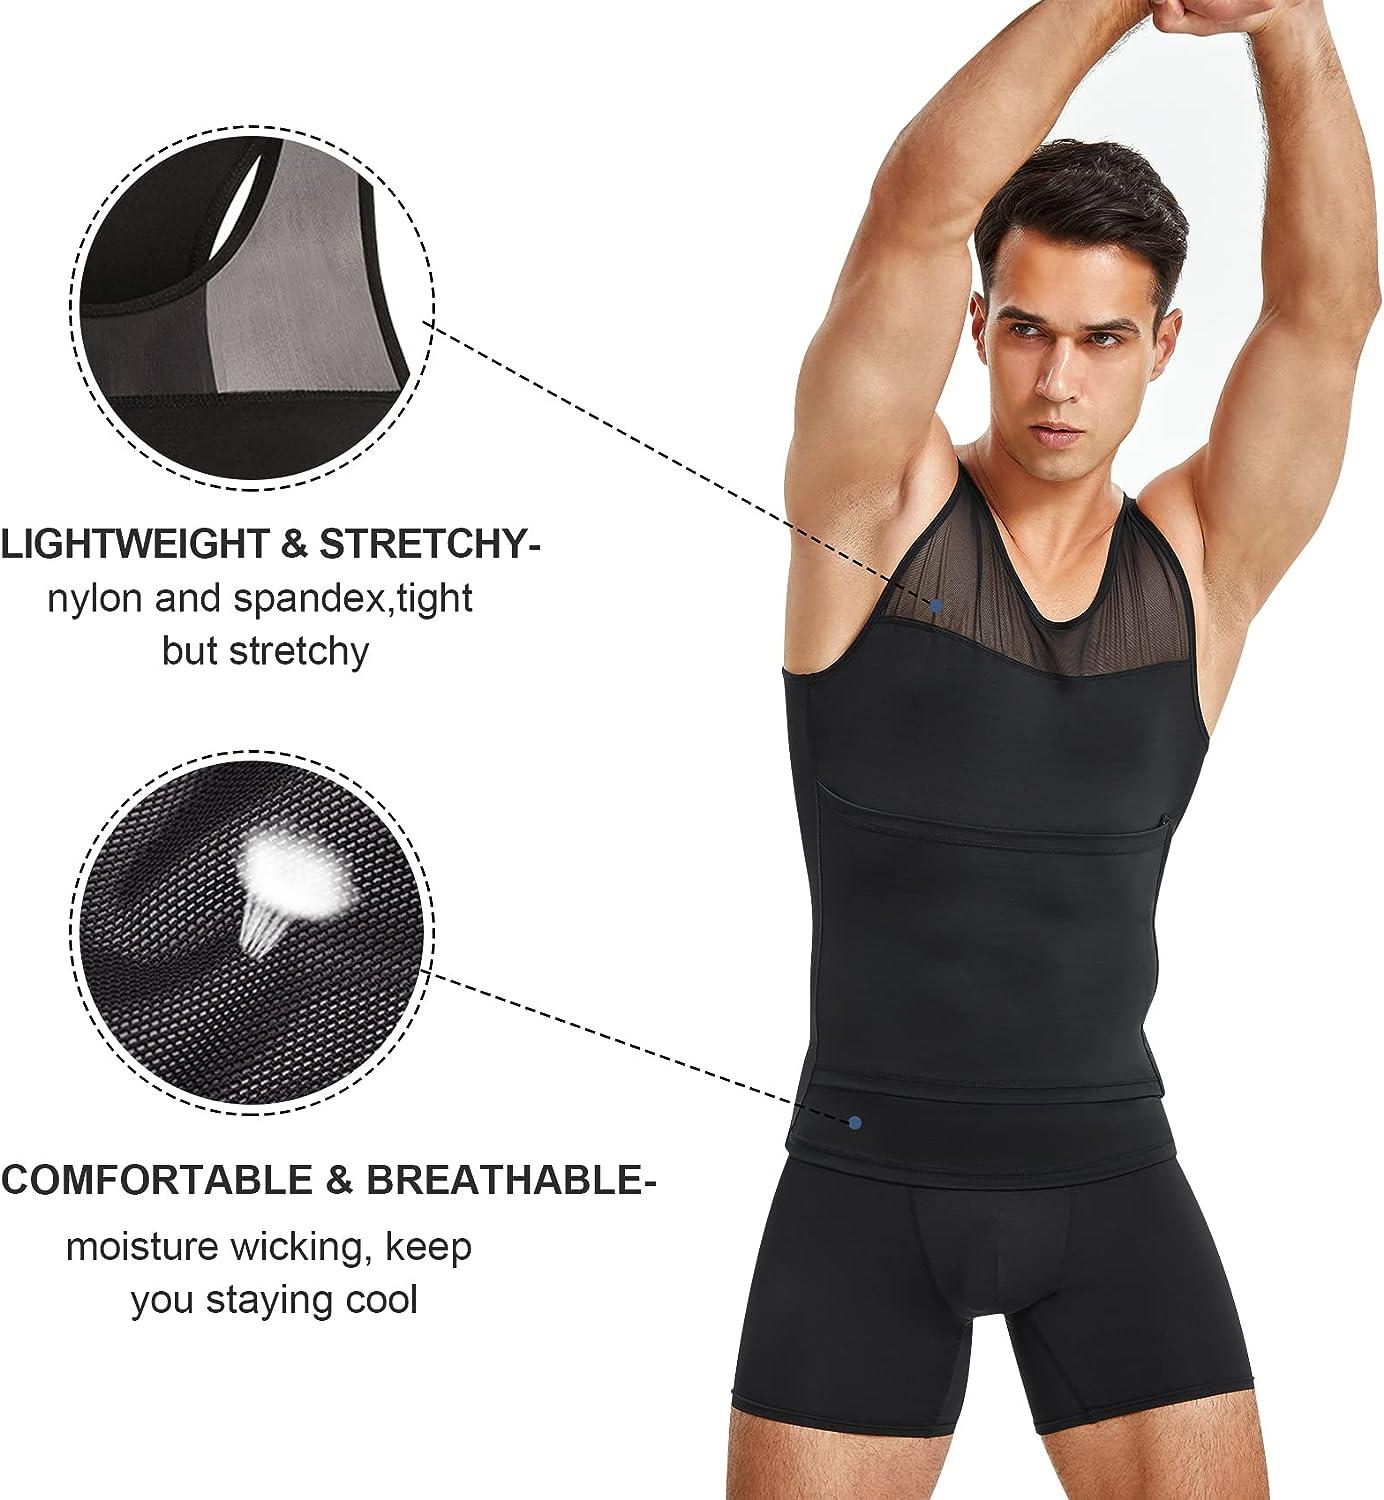 Molutan Men Compression shirt Slimming Vest Body Shaper Workout